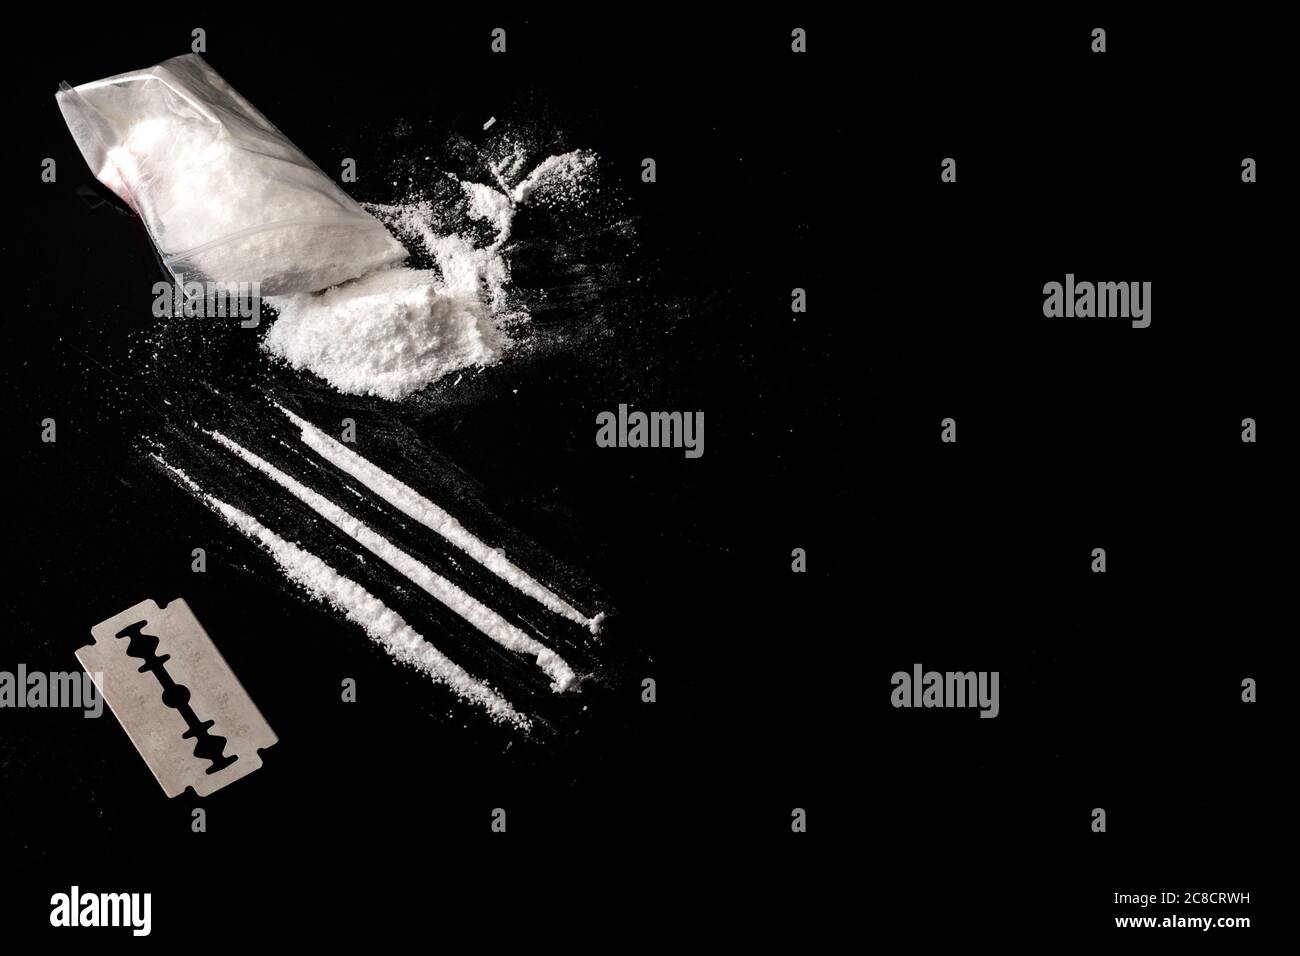 Drogenabhängigkeit und Drogenmissbrauch Konzept Thema mit Linien von Kokain, eine kleine Tasche mit weißem Pulver und eine Klinge verwendet, um jede Zeile von Betäubungsmitteln zu schneiden o Stockfoto